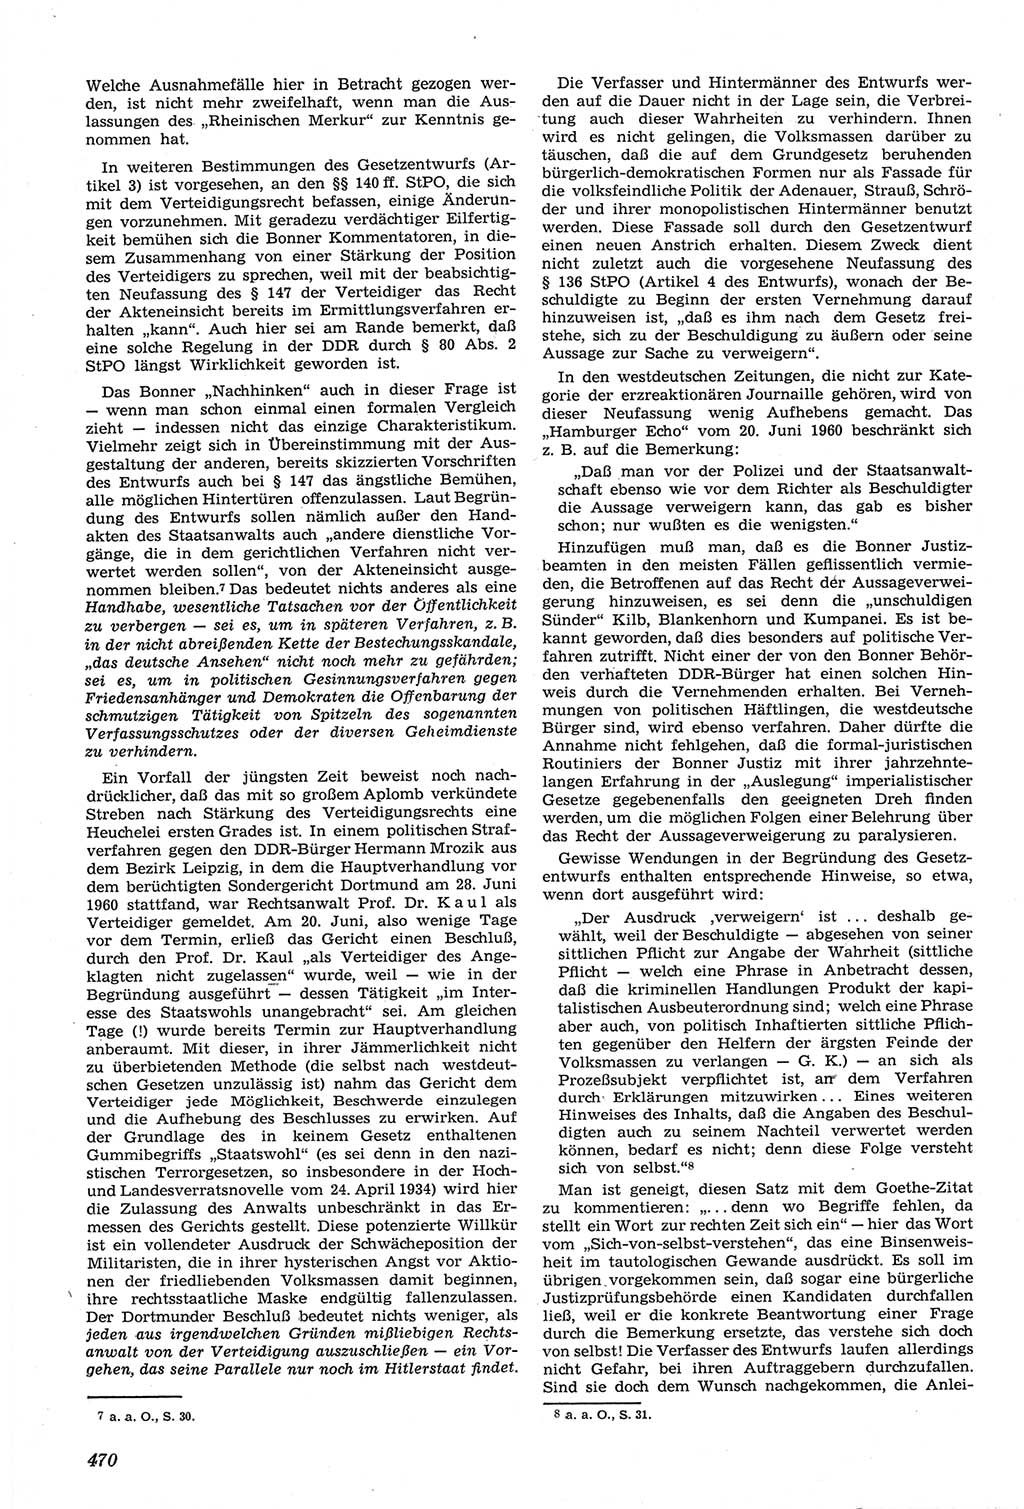 Neue Justiz (NJ), Zeitschrift für Recht und Rechtswissenschaft [Deutsche Demokratische Republik (DDR)], 14. Jahrgang 1960, Seite 470 (NJ DDR 1960, S. 470)